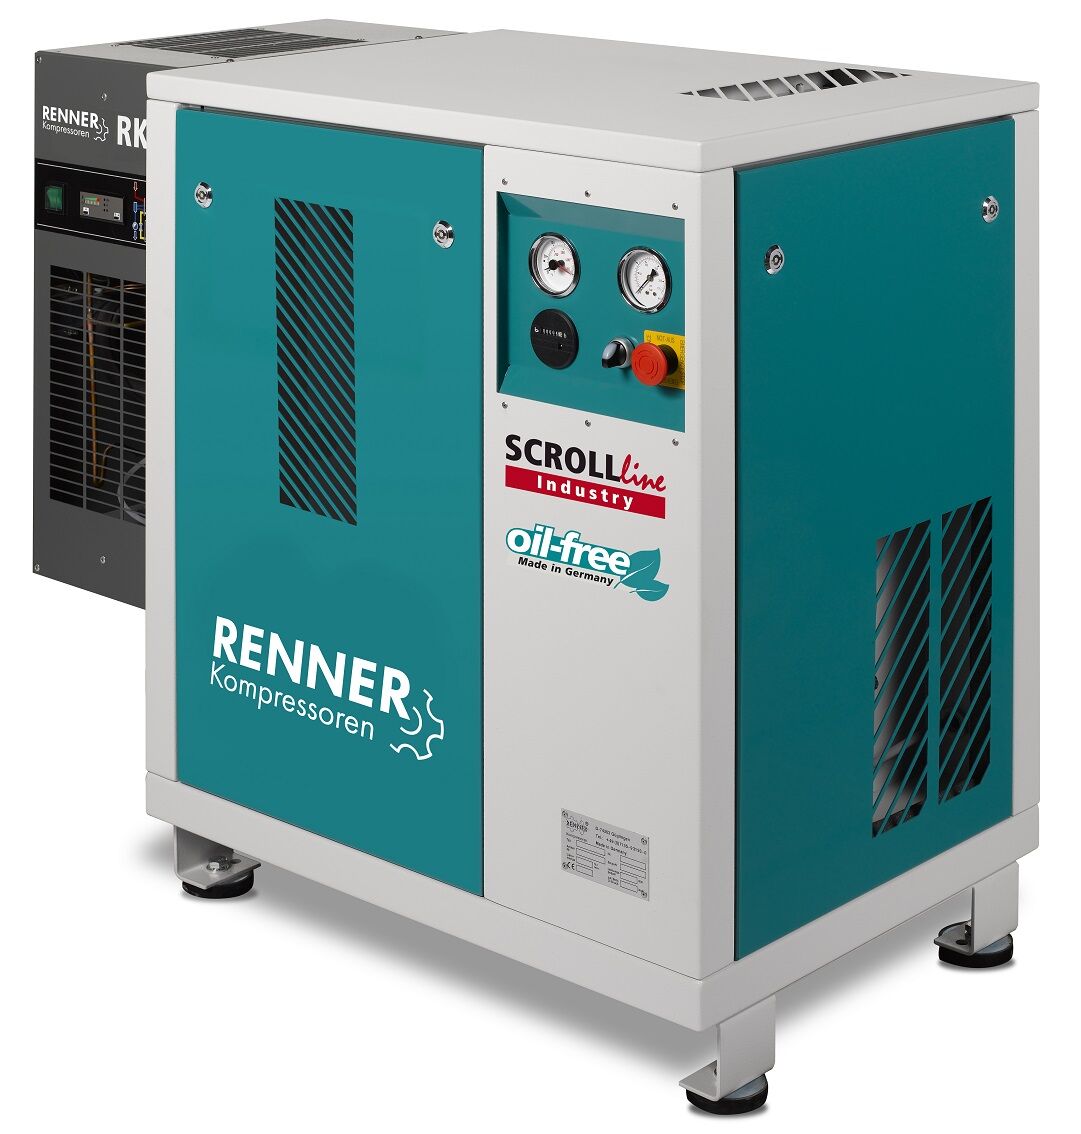 RENNER-Kompressor SLK-I 5,5 mit Kältetrockner - Industry ölfreier Scrollkompressor